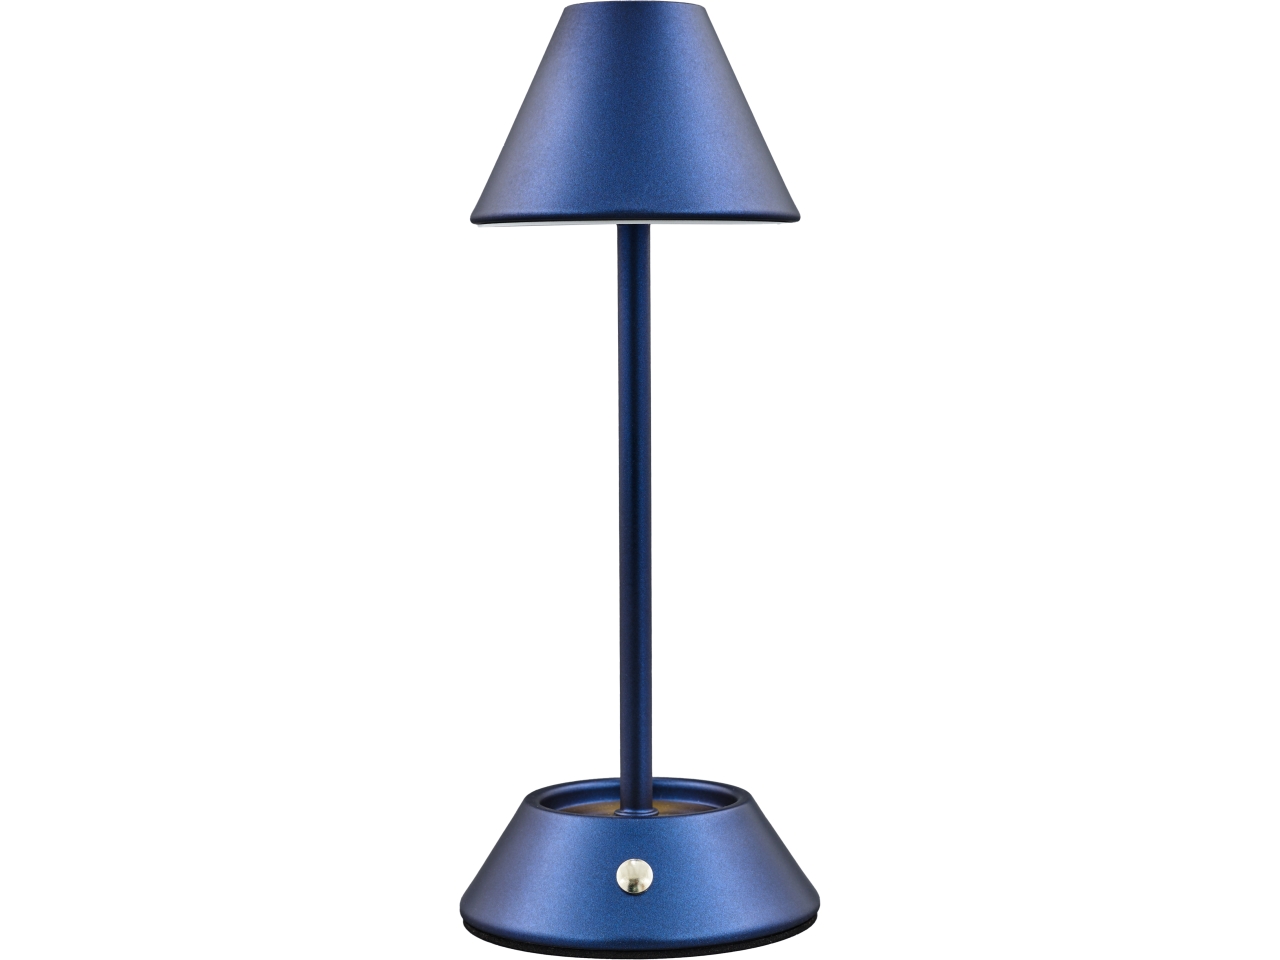 Lampada touch metal cono bassa colore blu misura 11,5x11,5x24cm